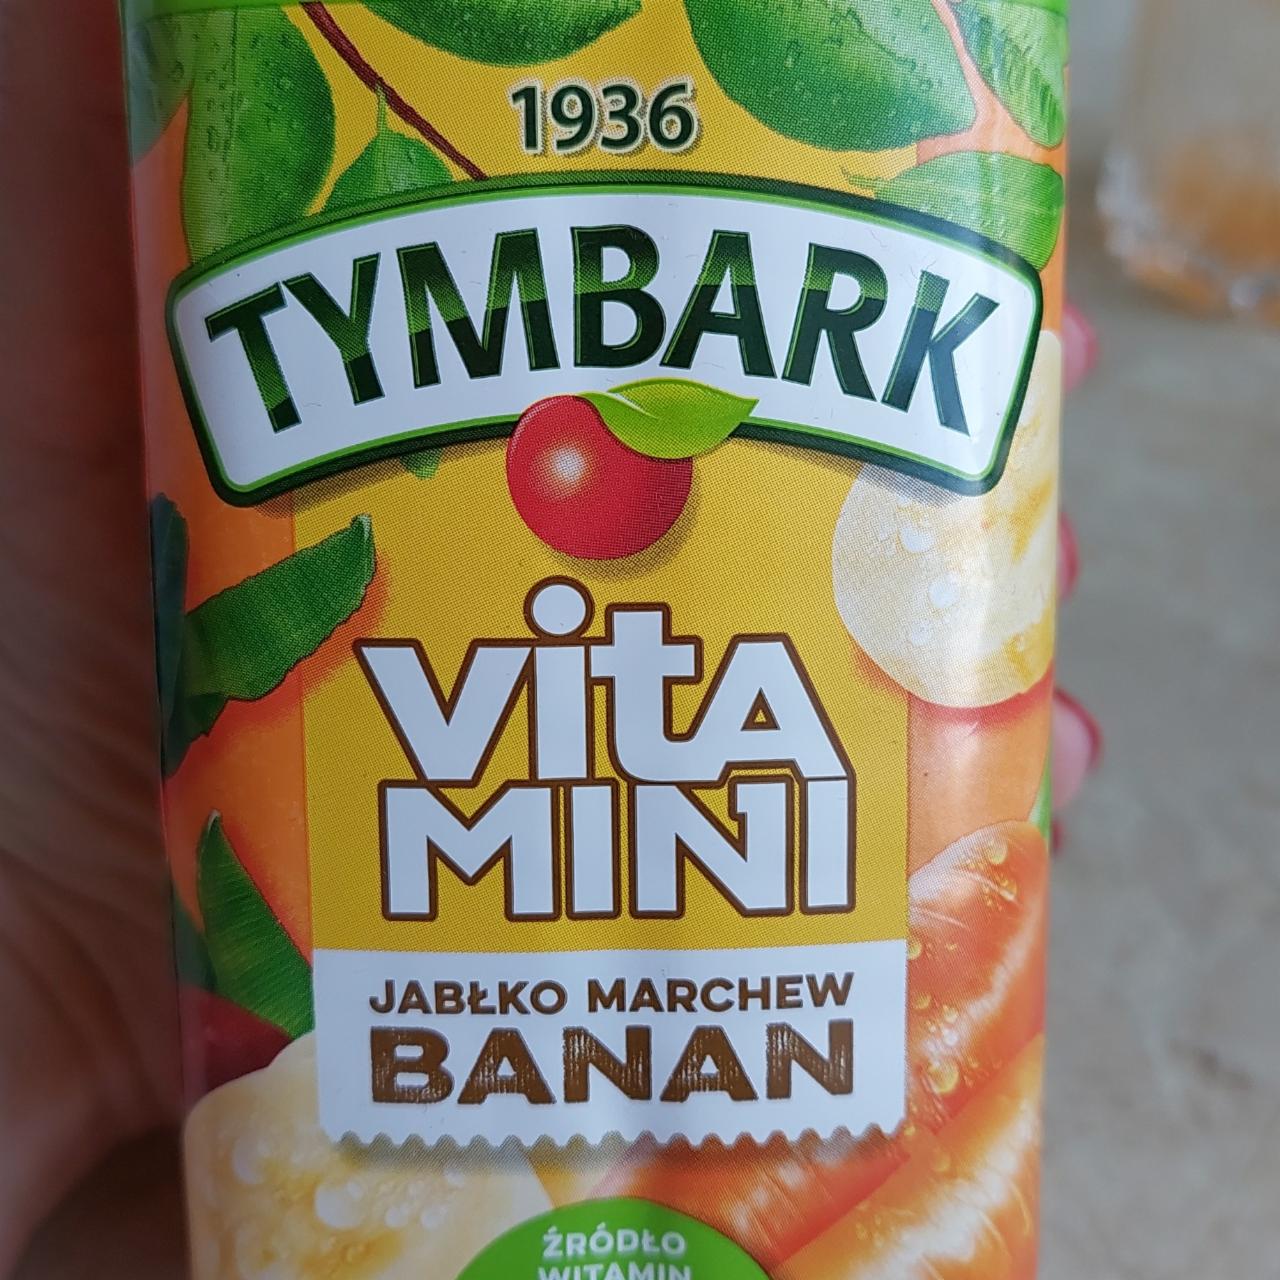 Фото - Сок яблоко-морковь-банан Vitamini Tymbark